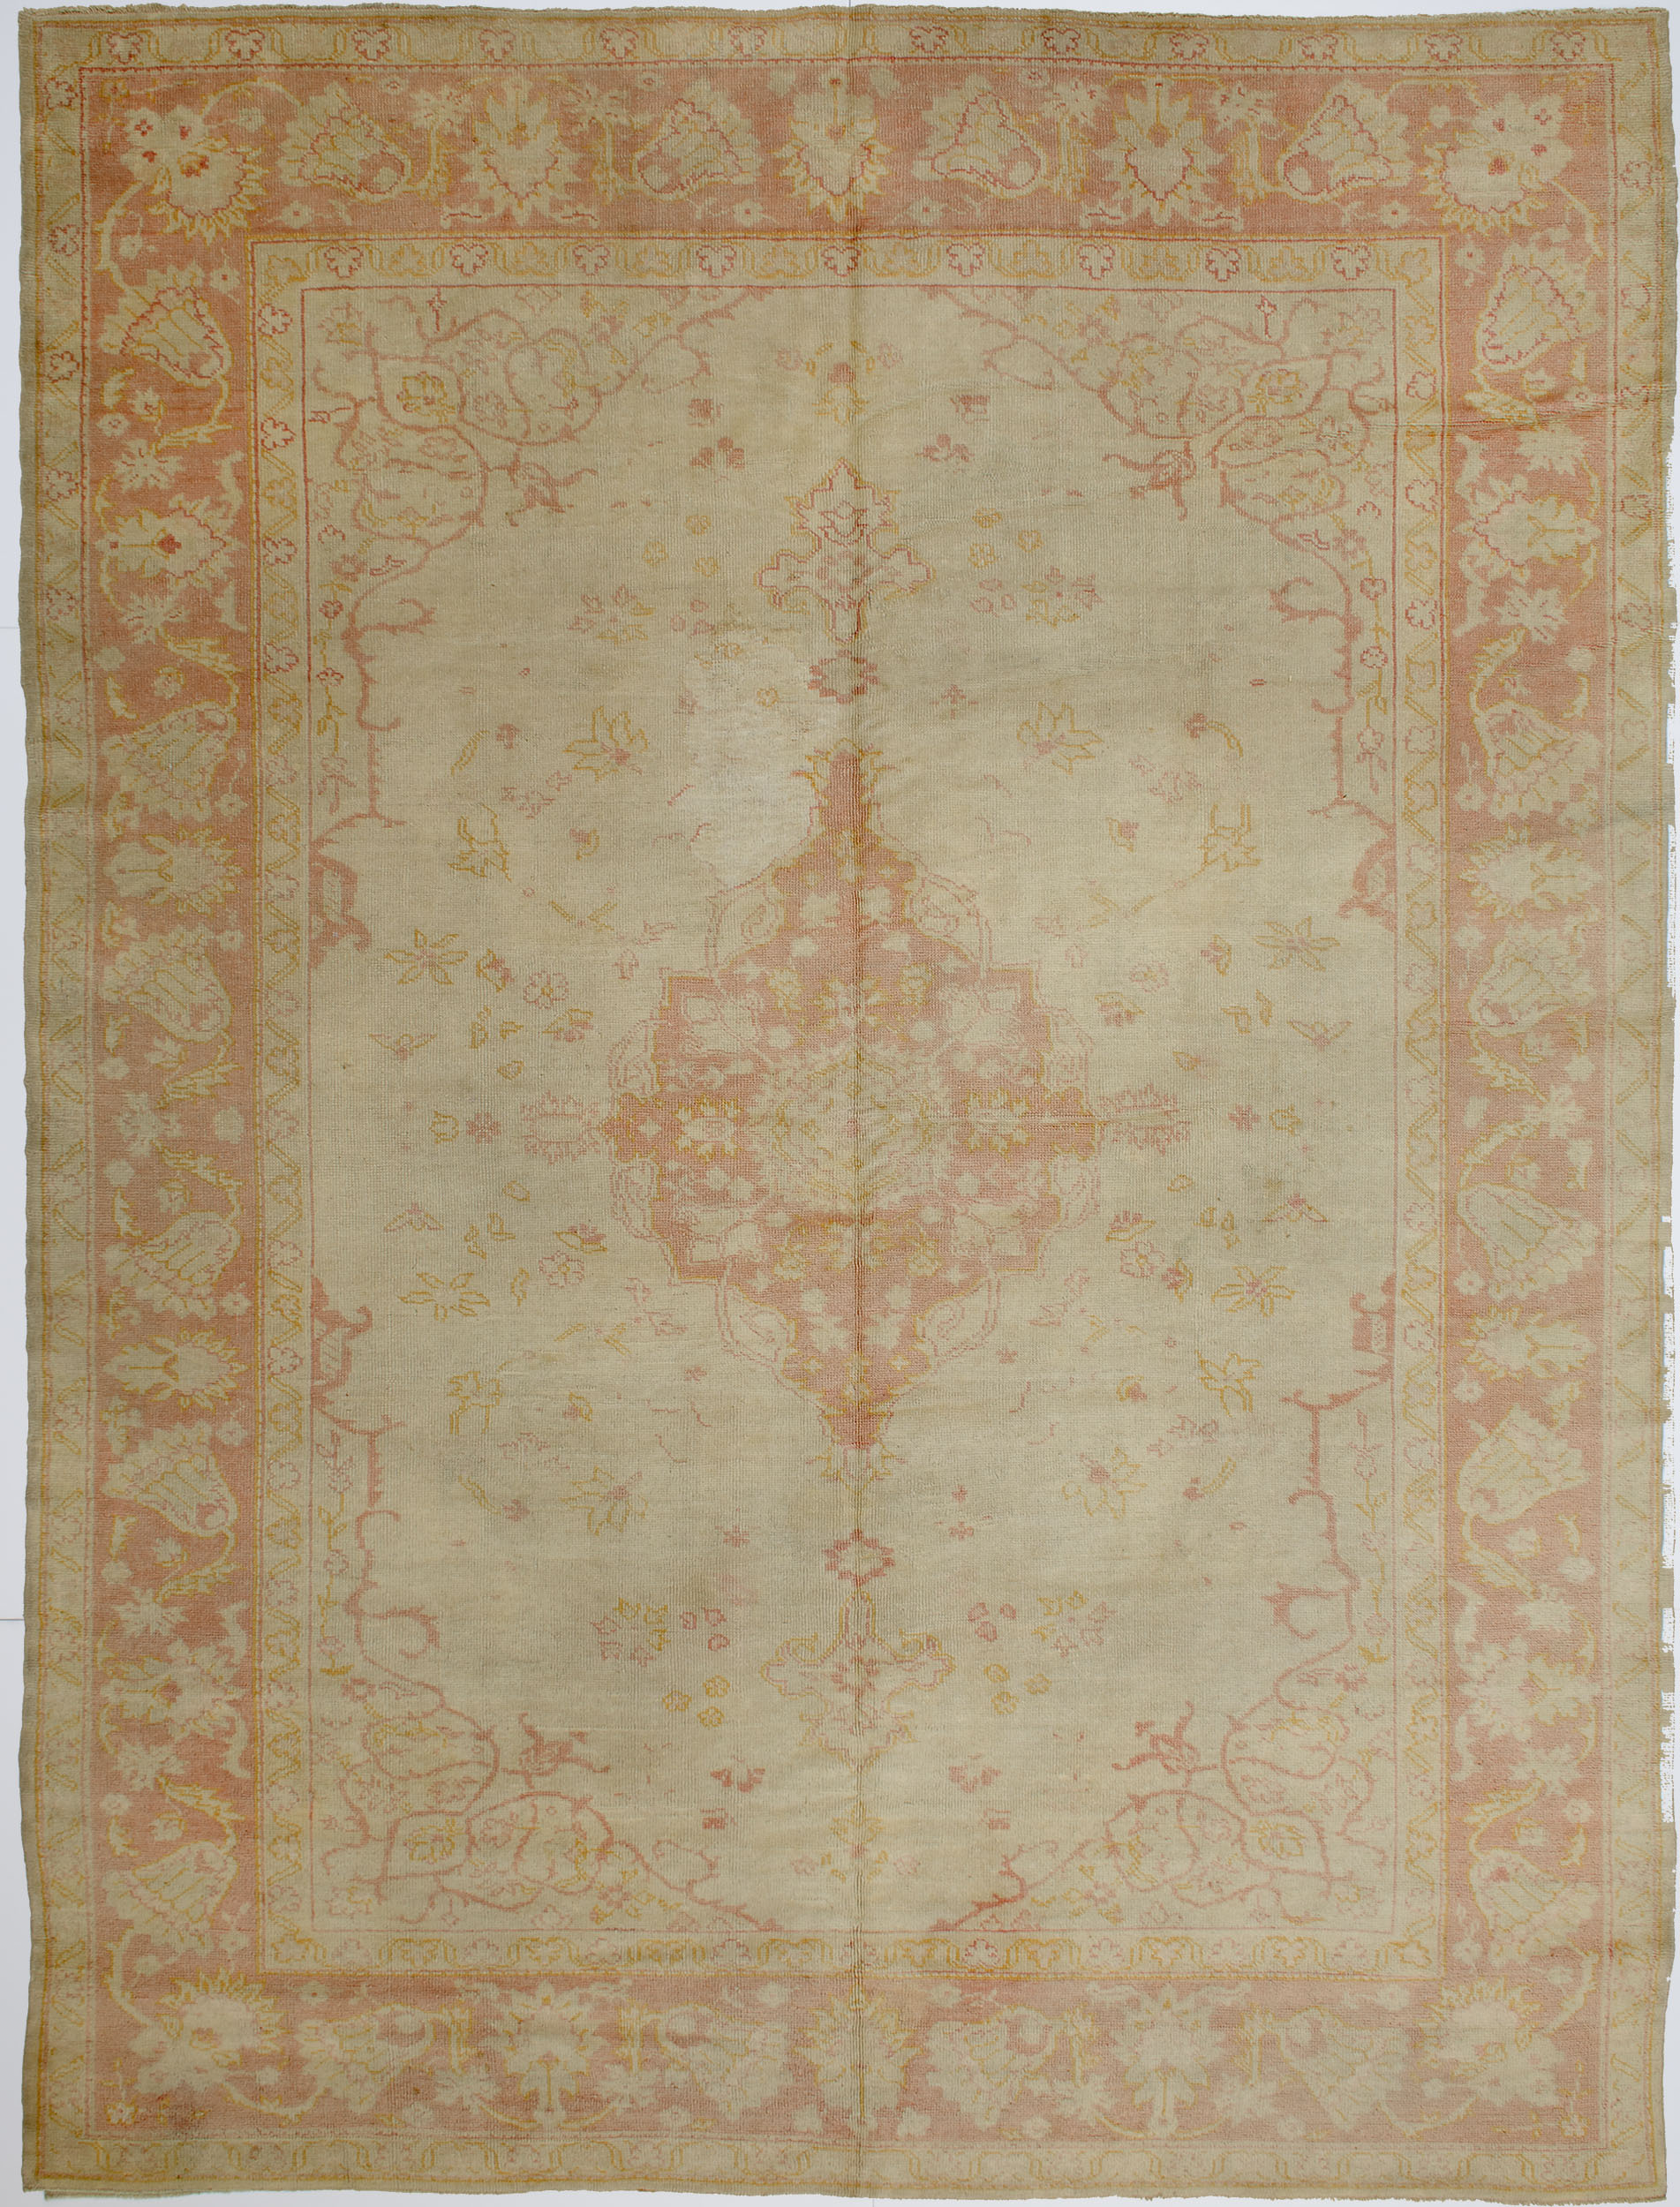 Borlu Oushak Carpet 11' 1" x 8' 3" 